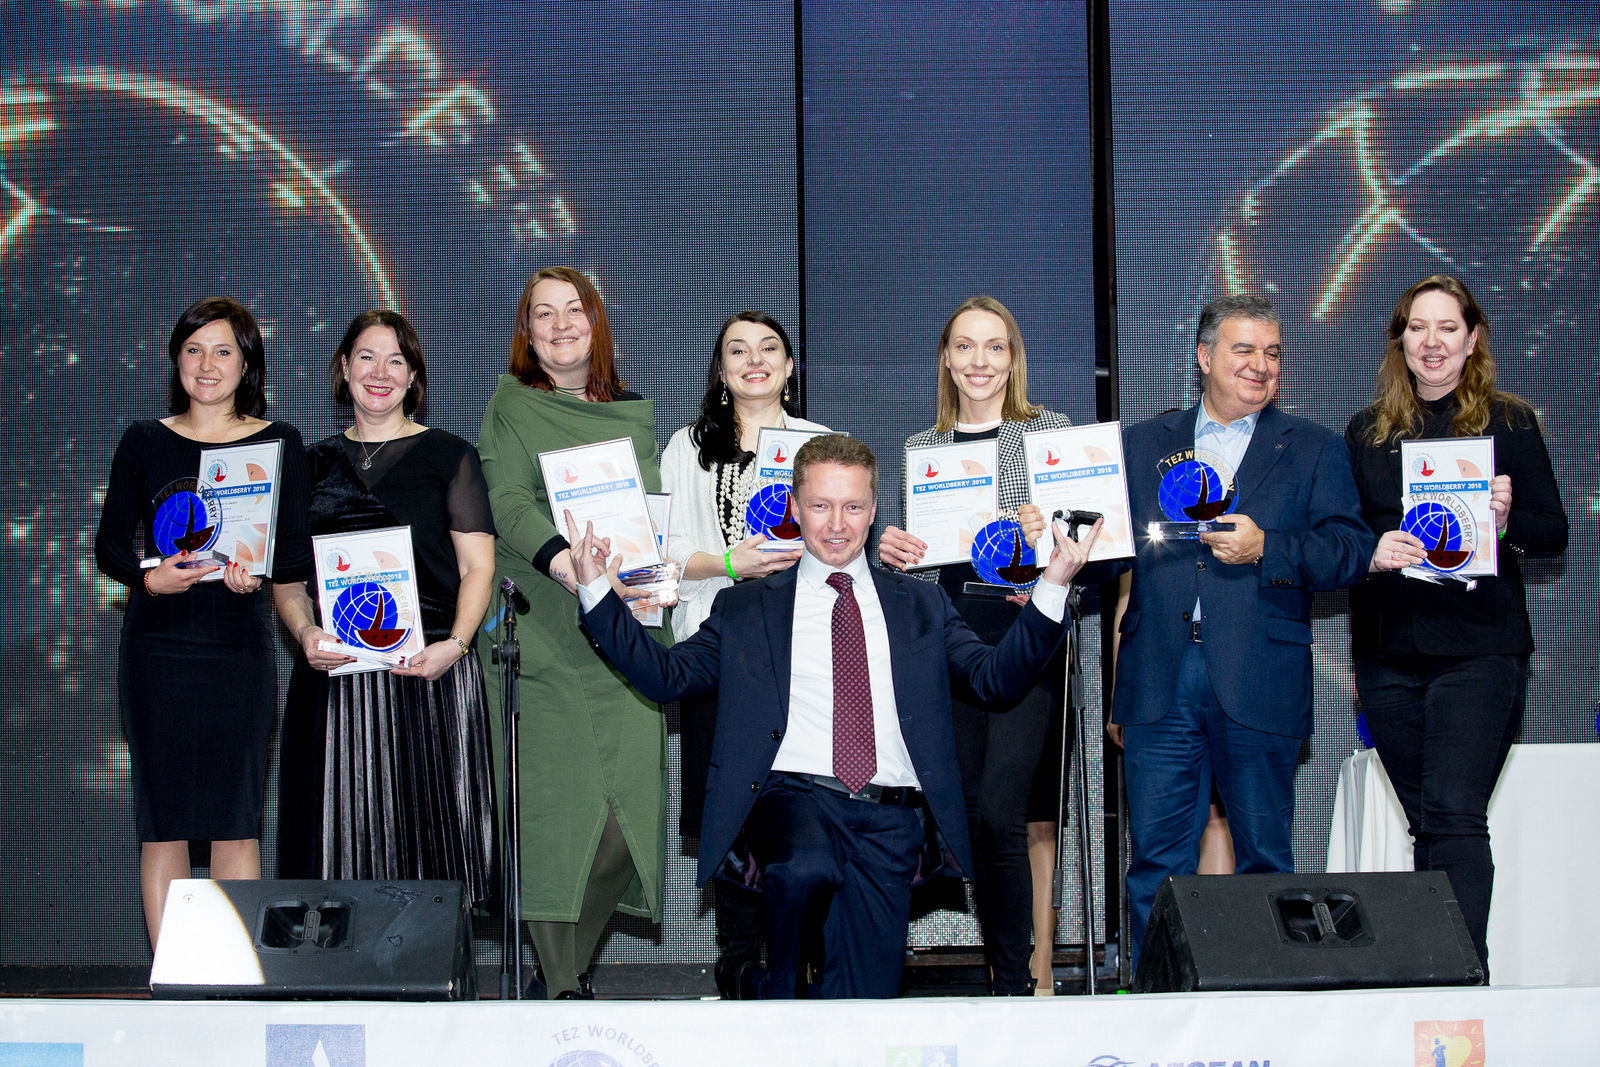 Ежегодная премия в области турбизнеса Tez Worldberry-2019 состоялась в Москве